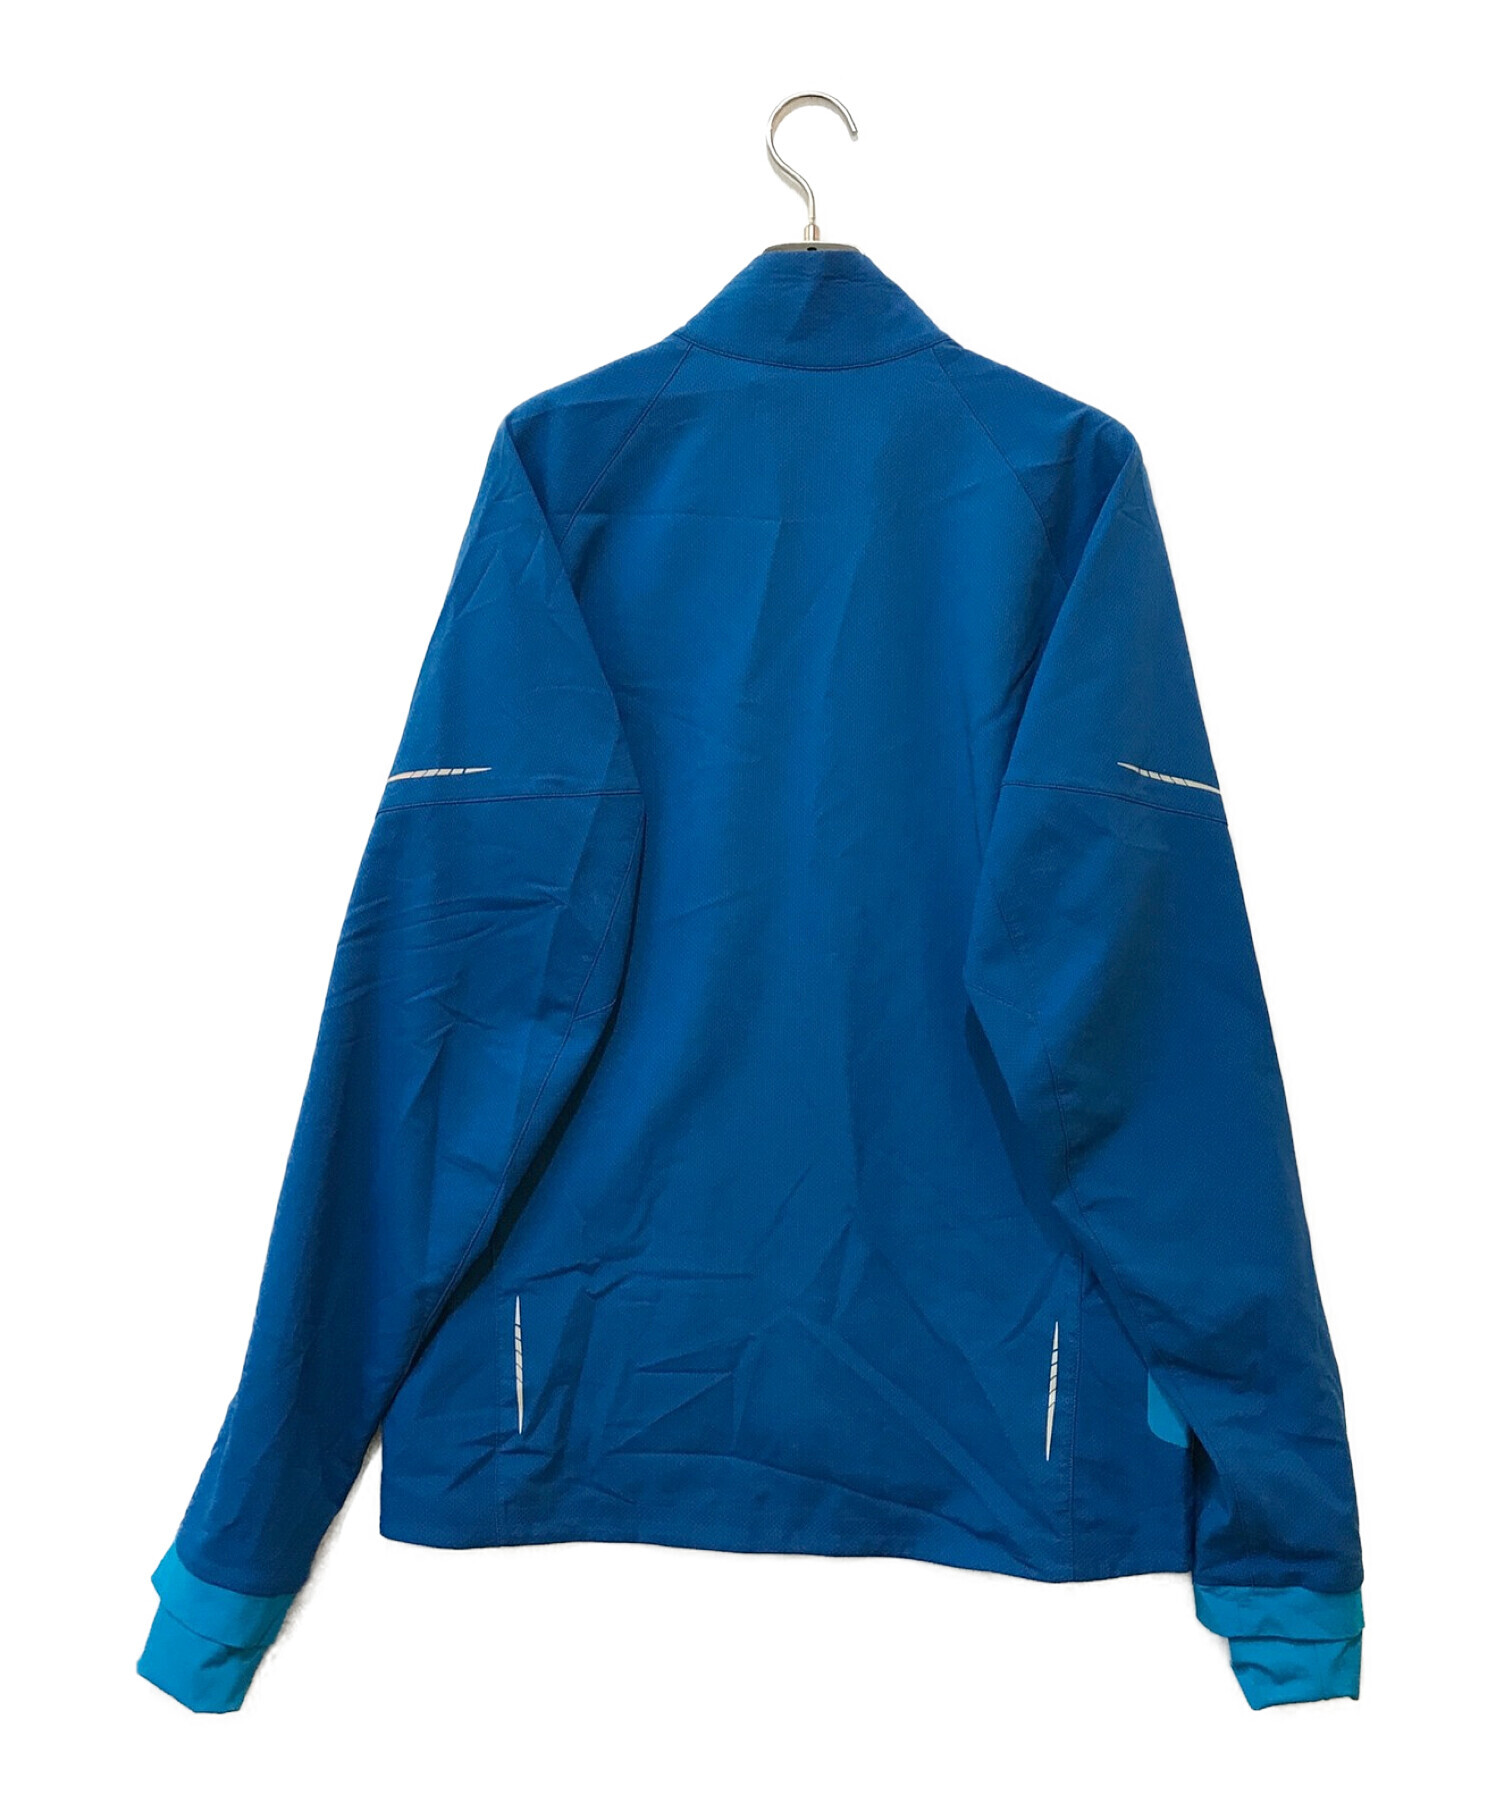 ARC'TERYX (アークテリクス) アクセラレータジャケット ブルー サイズ:M